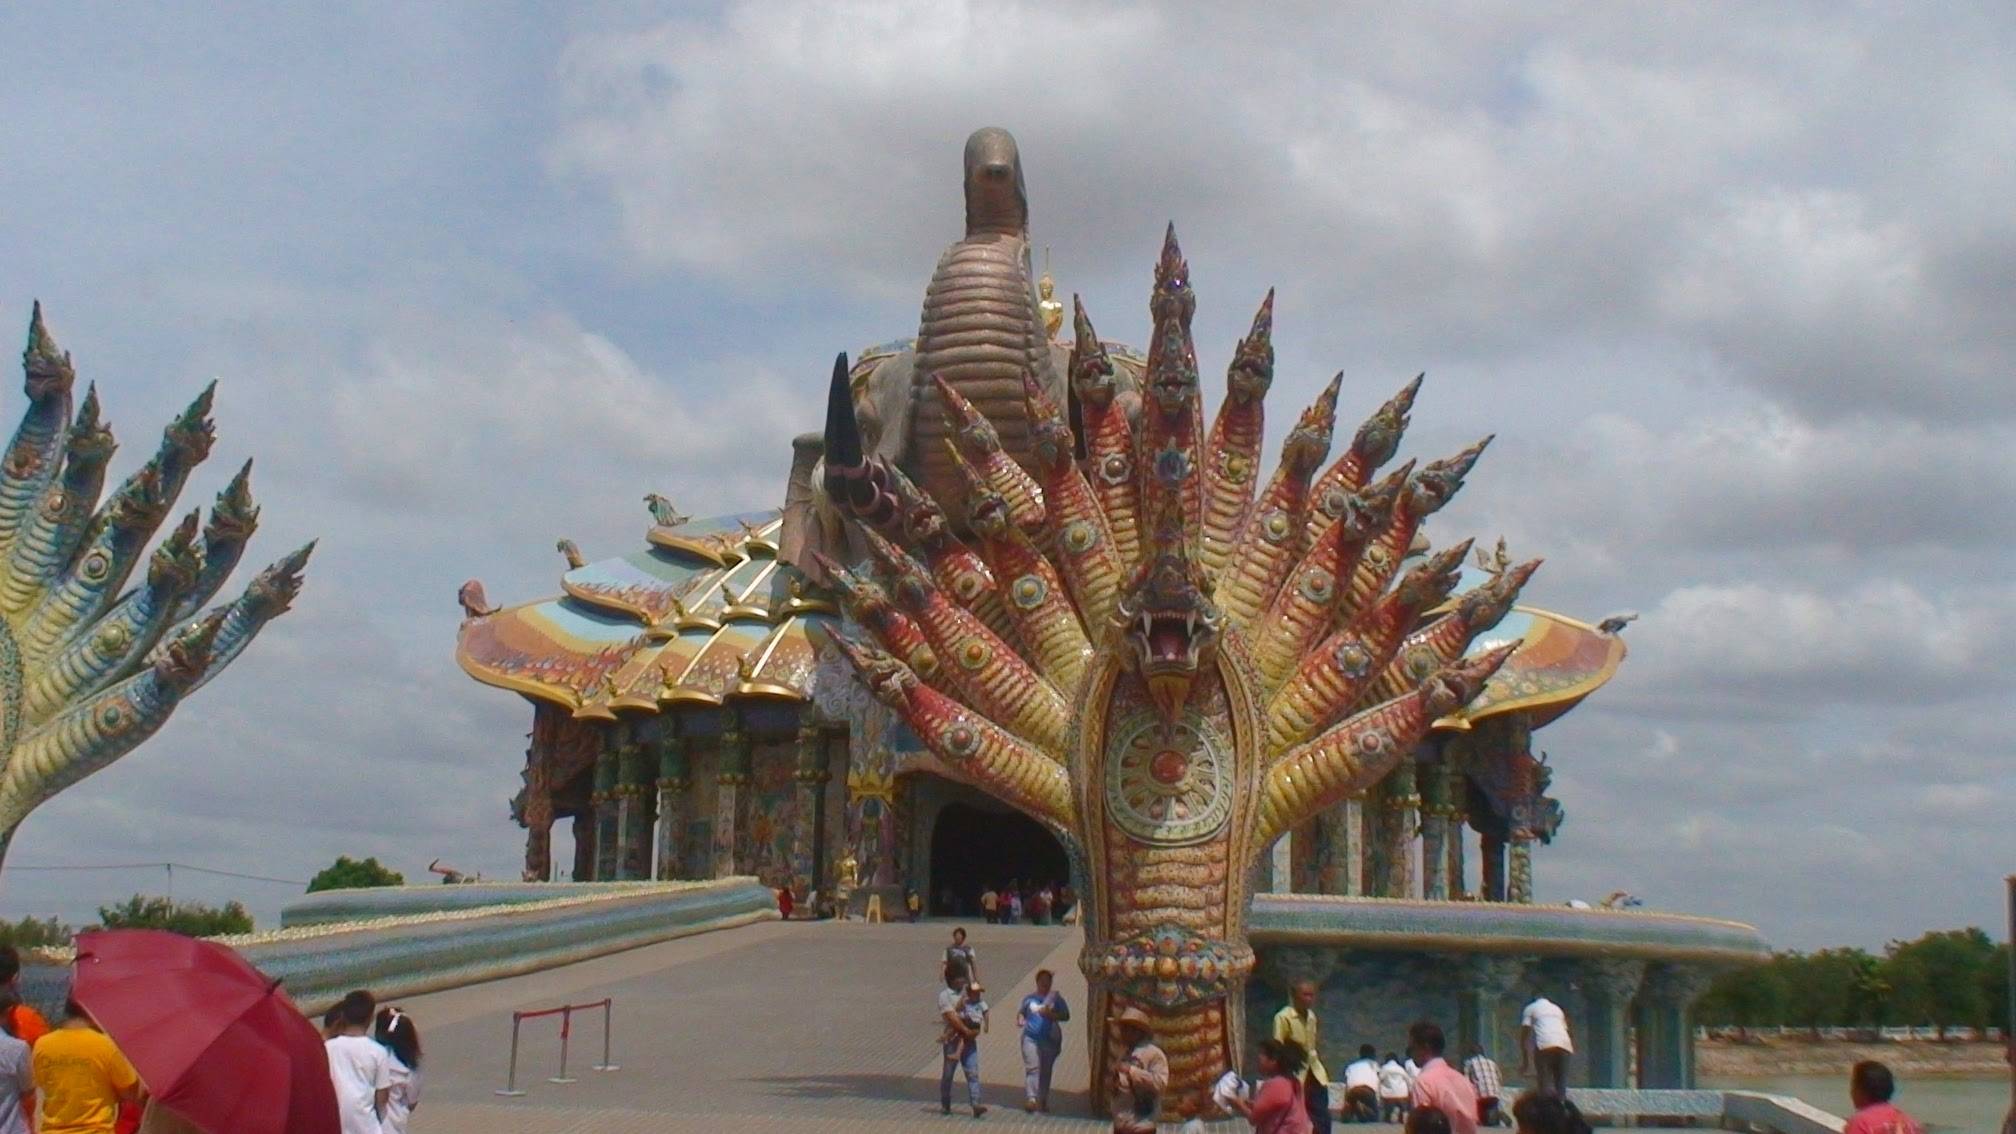 Wat Ban Rai (วัดบ้านไร่) - Elephant Temple (Part 1)